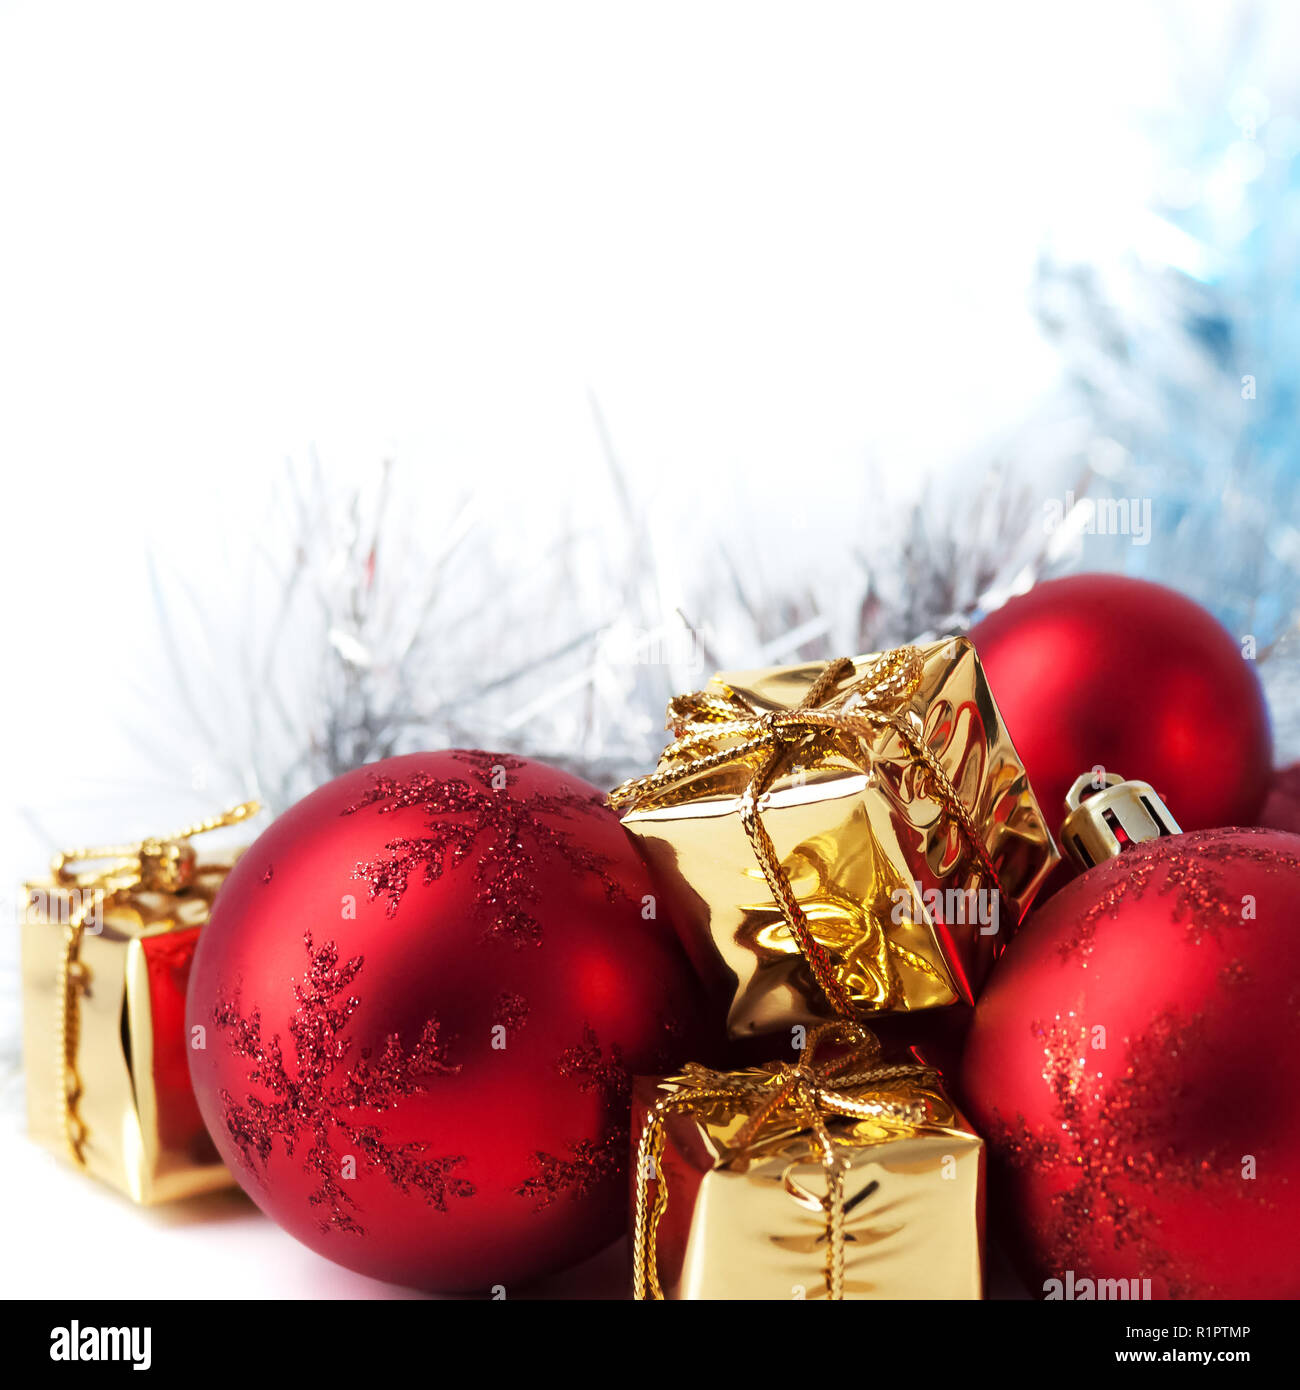 Joyeux Noël, Nouvel An, cadeaux en boîte en or, boules de Noël rouge dans  le coin supérieur droit. Fond blanc Photo Stock - Alamy